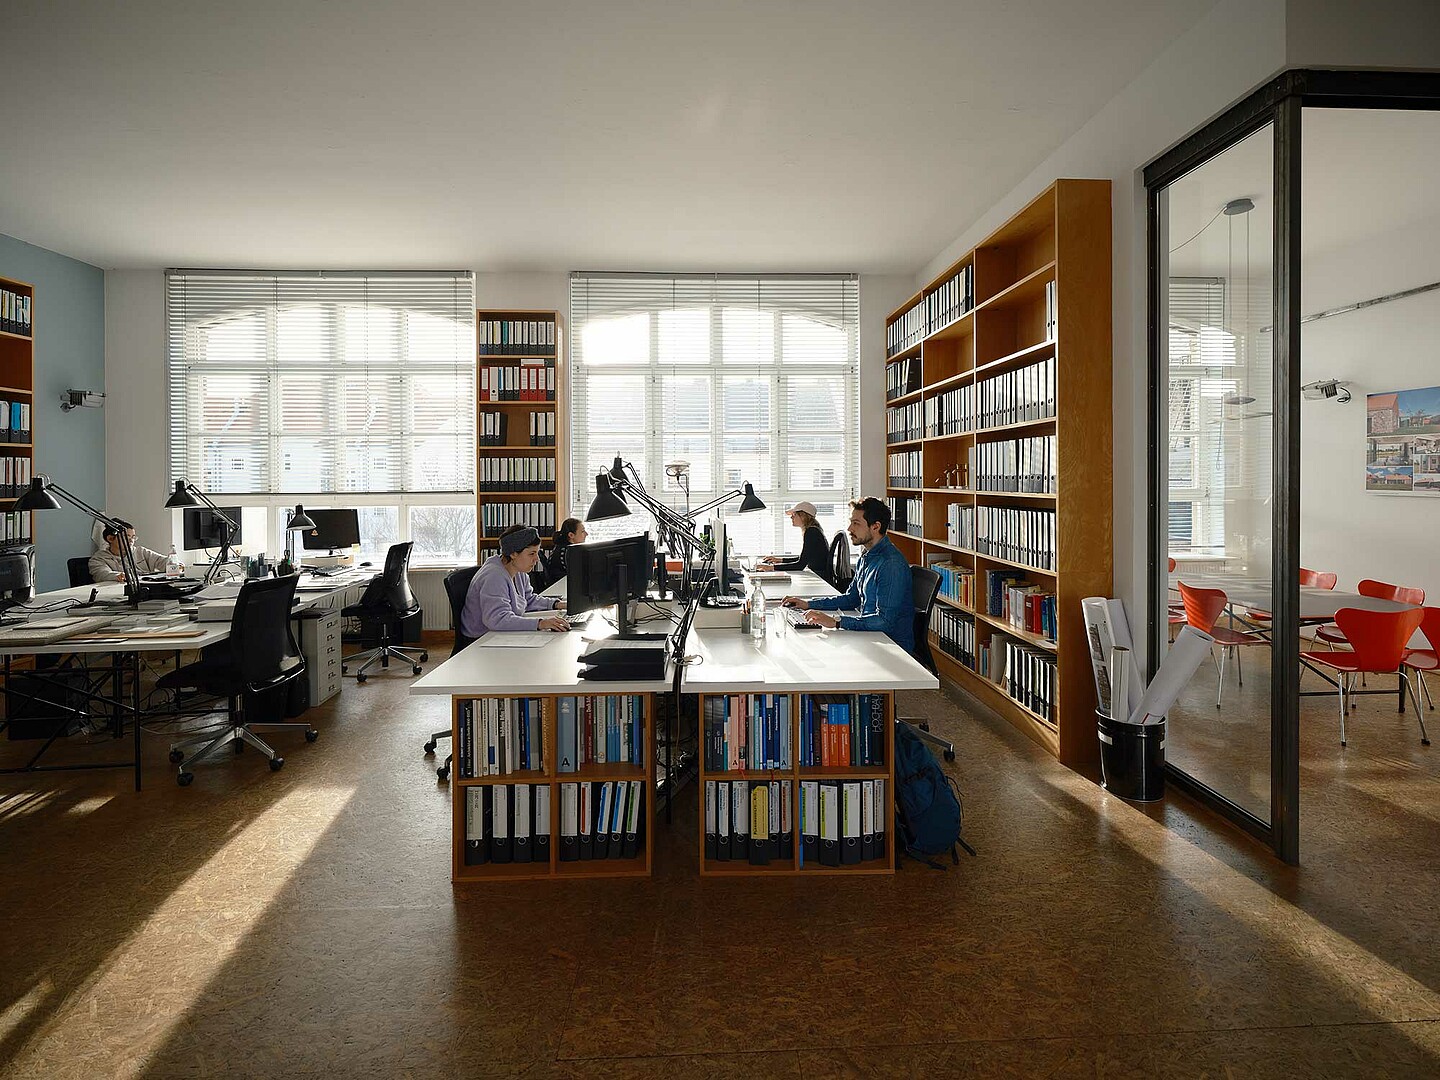 Vier Menschen arbeiten in einem geräumigen Architekturbüro. Sie sitzen am Computer und sind vertieft in ihre Arbeit. An den Wänden stehen hohe Regale, die mit Büchern und Ordnern gefüllt sind.  Durch die großen Fenster fällt viel Licht.